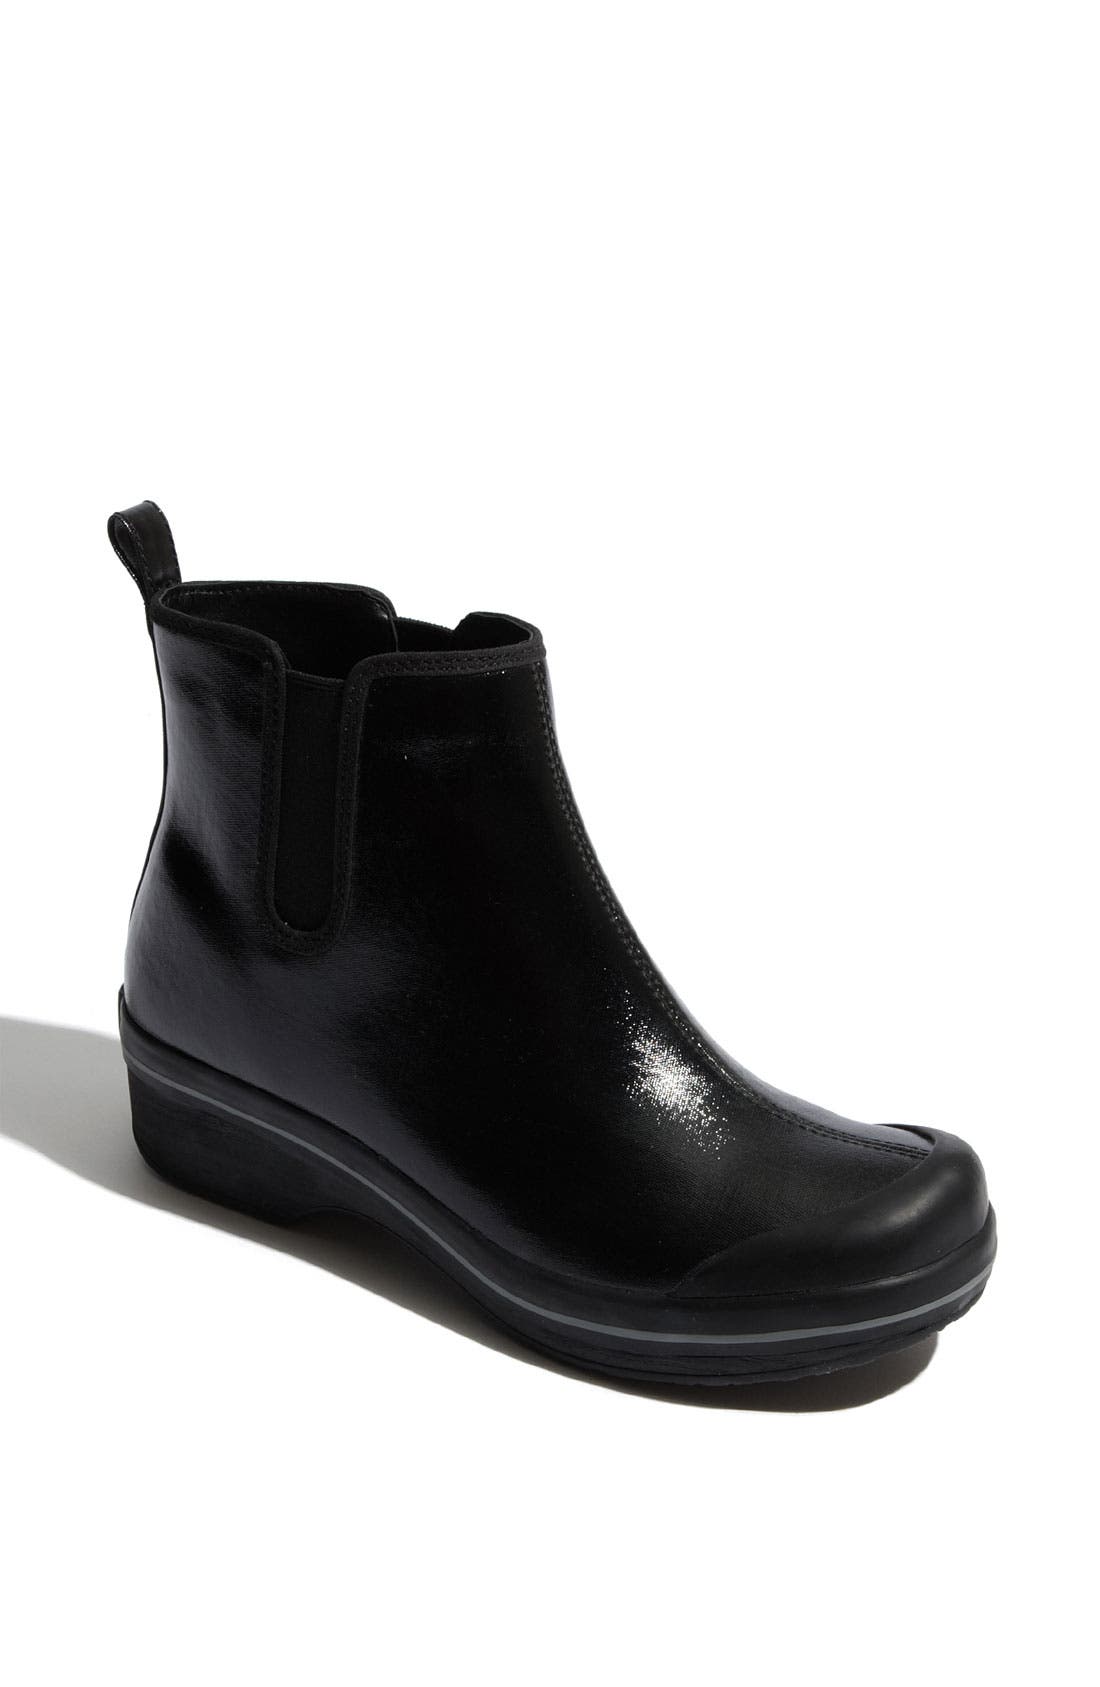 dansko rain boots